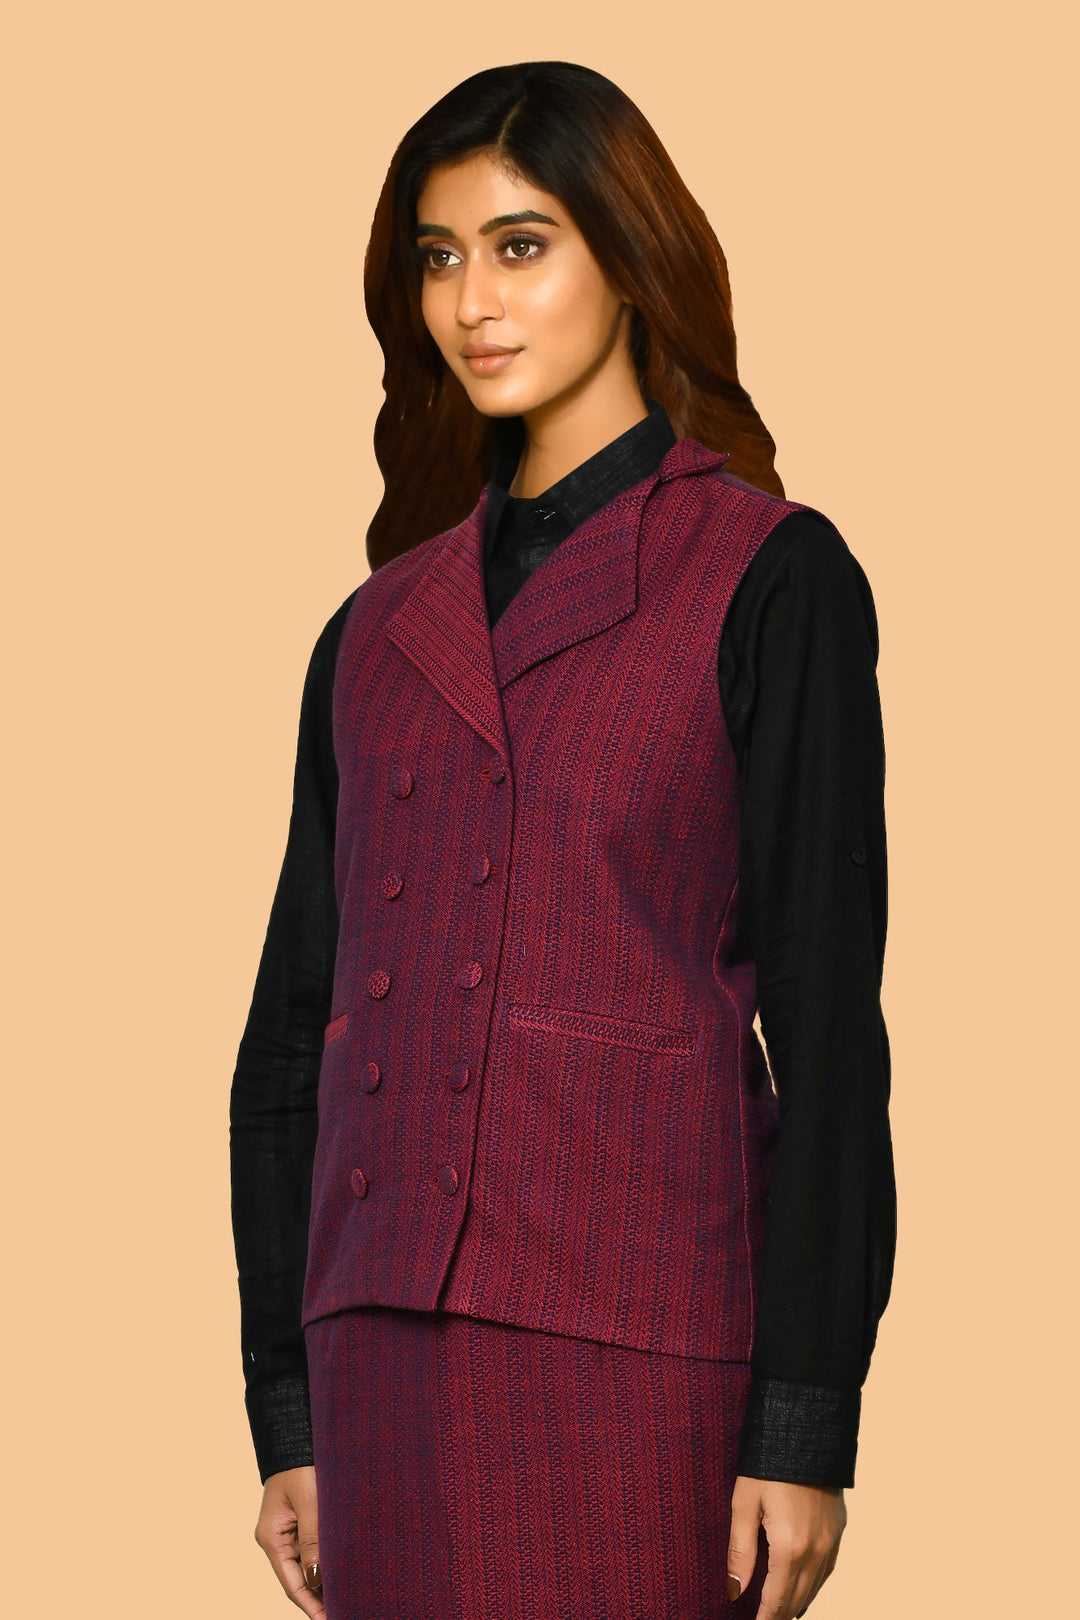 Trisha Handloom Pure Cotton Waist-Coat Jacket